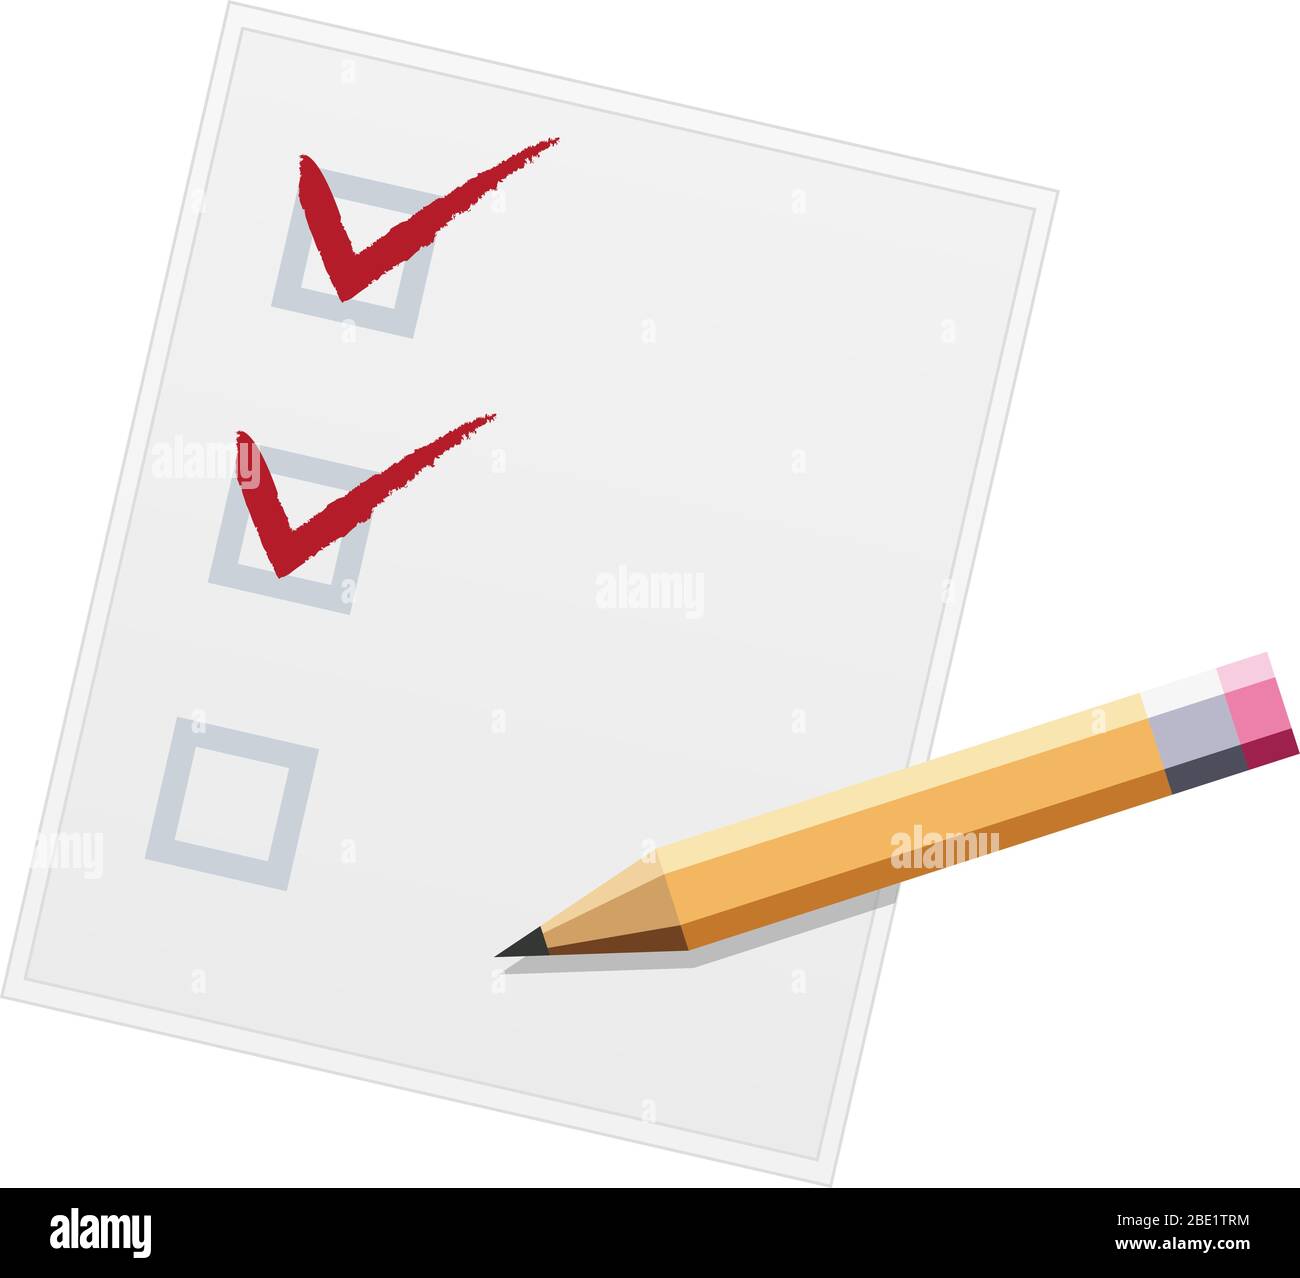 Checkliste mit Bleistift flaches Design Illustration. Zwei von drei. Vektor Stock Vektor